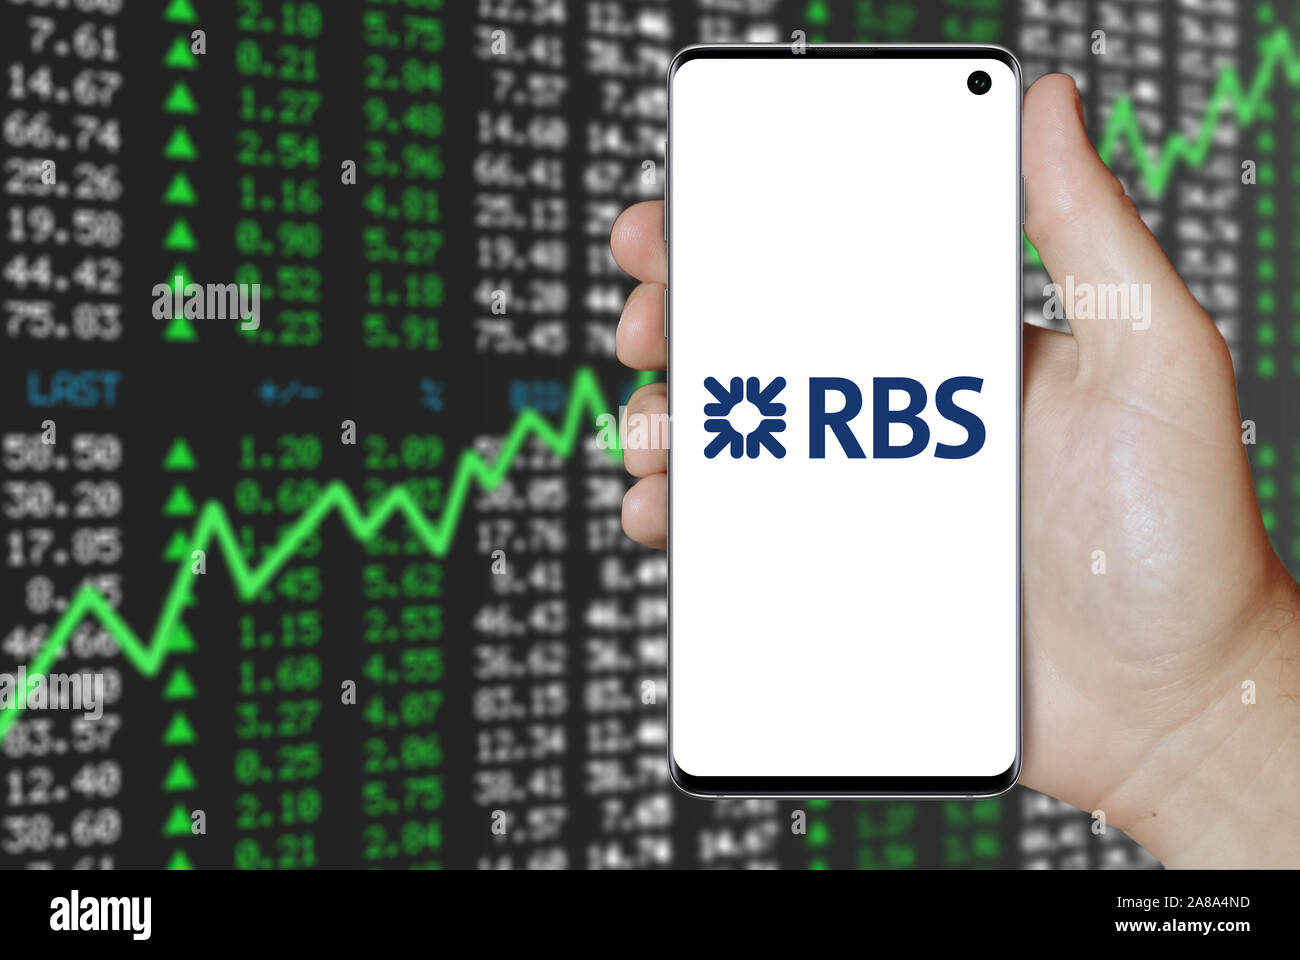 Logo de compagnie publique Royal Bank of Scotland Group affiche sur un smartphone. Marché des actions positives. Credit : PIXDUCE Banque D'Images